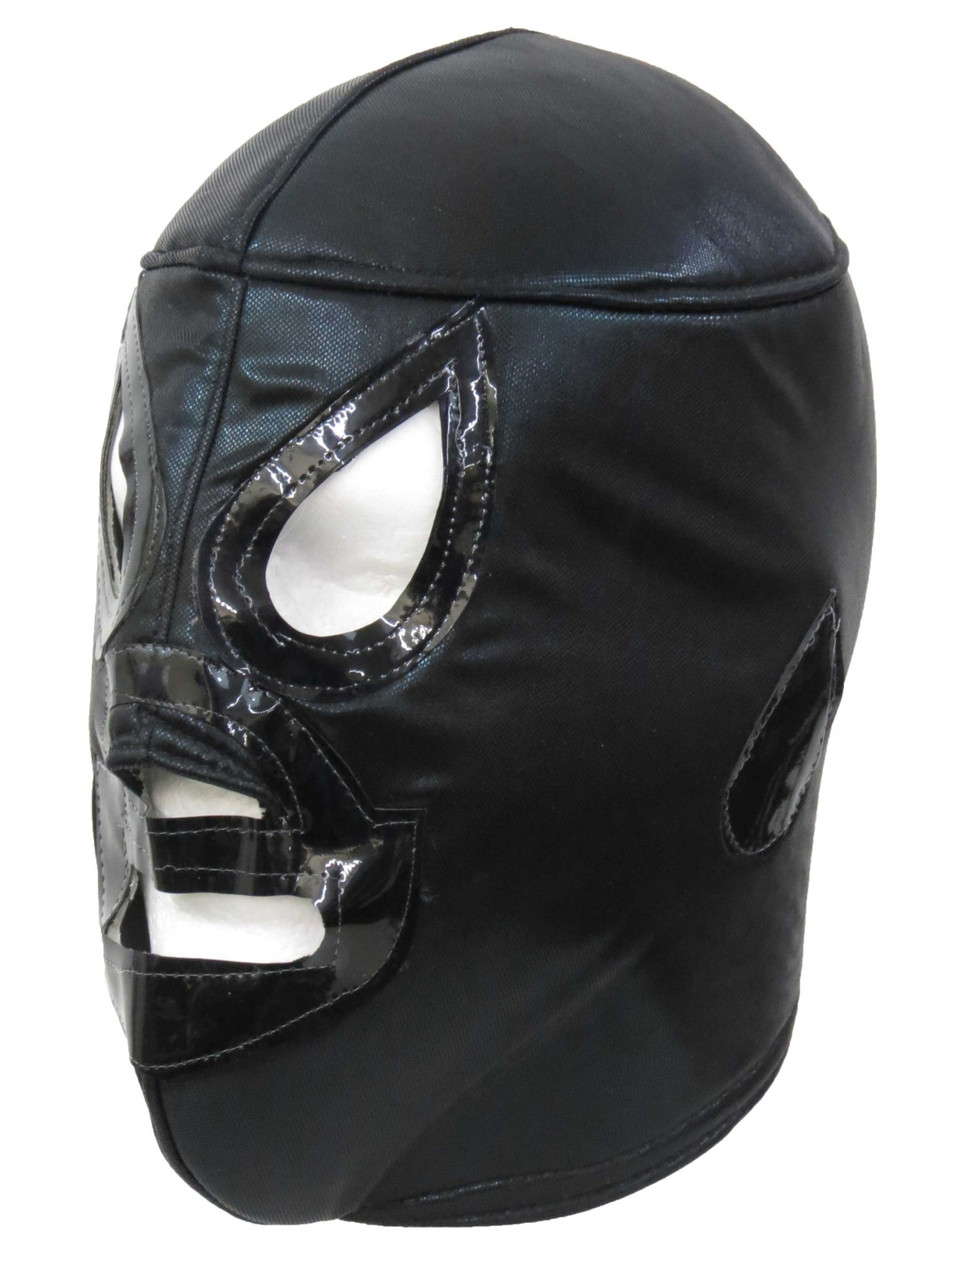 El adult lucha libre wrestling mask (pro-fit) costume wear -